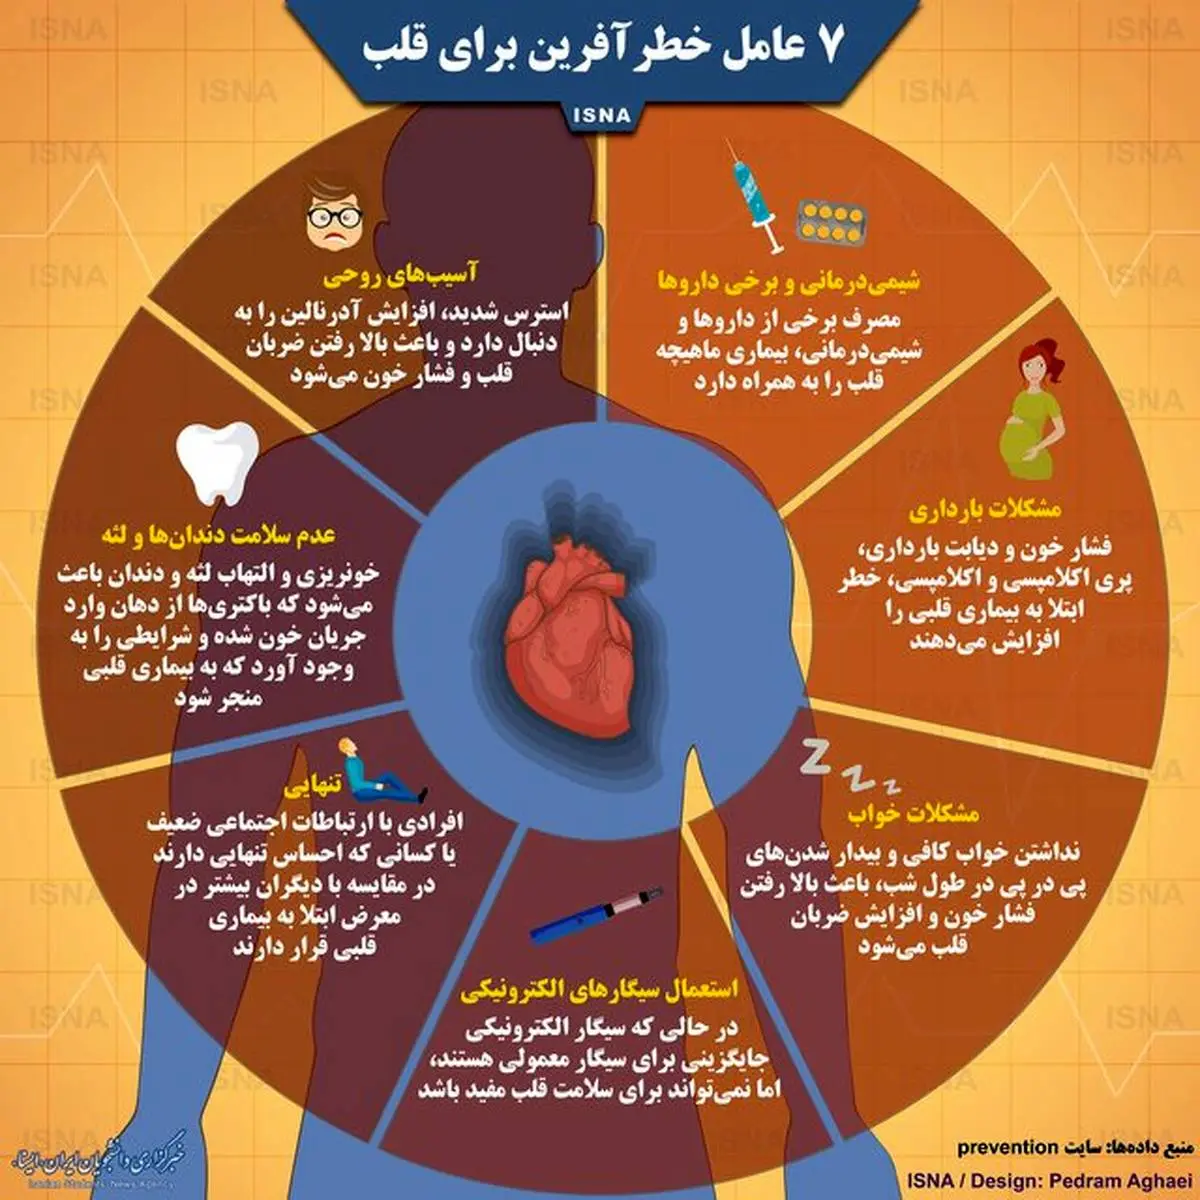 هفت عامل خطرآفرین برای قلب +اینفوگرافیک